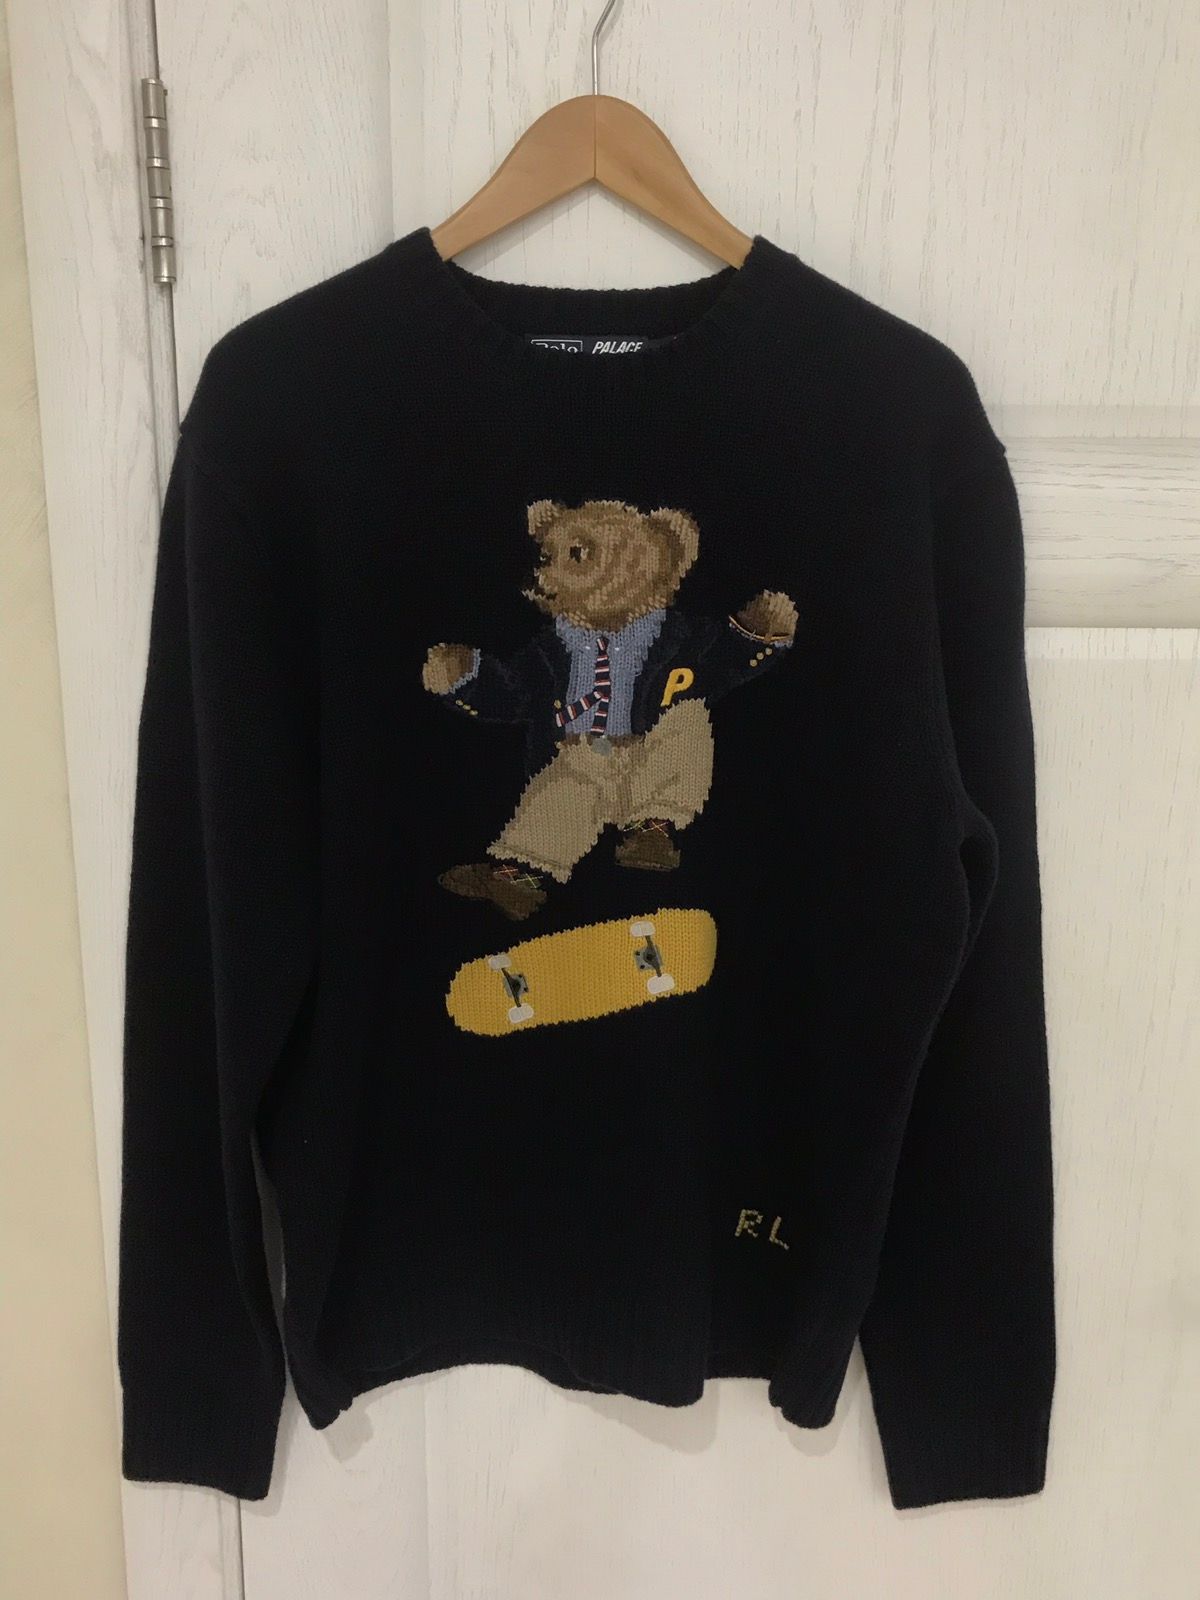 Polo Ralph Lauren Palace Ralph Lauren Skate Bear Sweater | Grailed